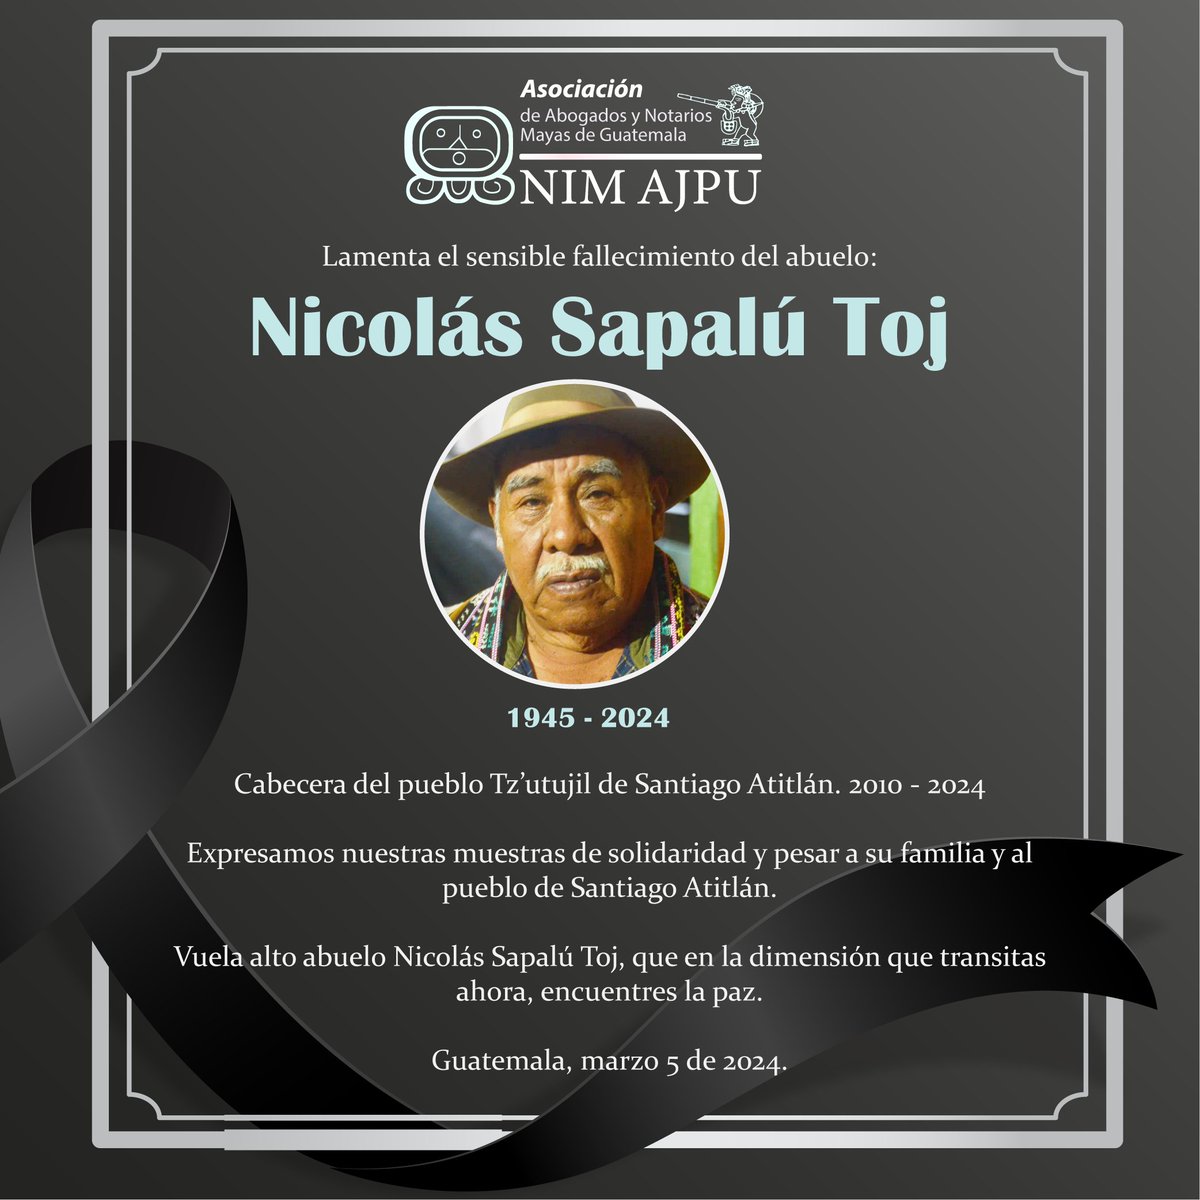 #NotaDeDuelo | @nimajpu lamenta el sensible fallecimiento del abuelo Nicolás Sapalú Toj Cabecera del pueblo Tz’utujil de Santiago Atitlán. Expresamos nuestras muestras de solidaridad y pesar a su familia y al pueblo de Santiago Atitlán. Guatemala, marzo 5 de 2024.